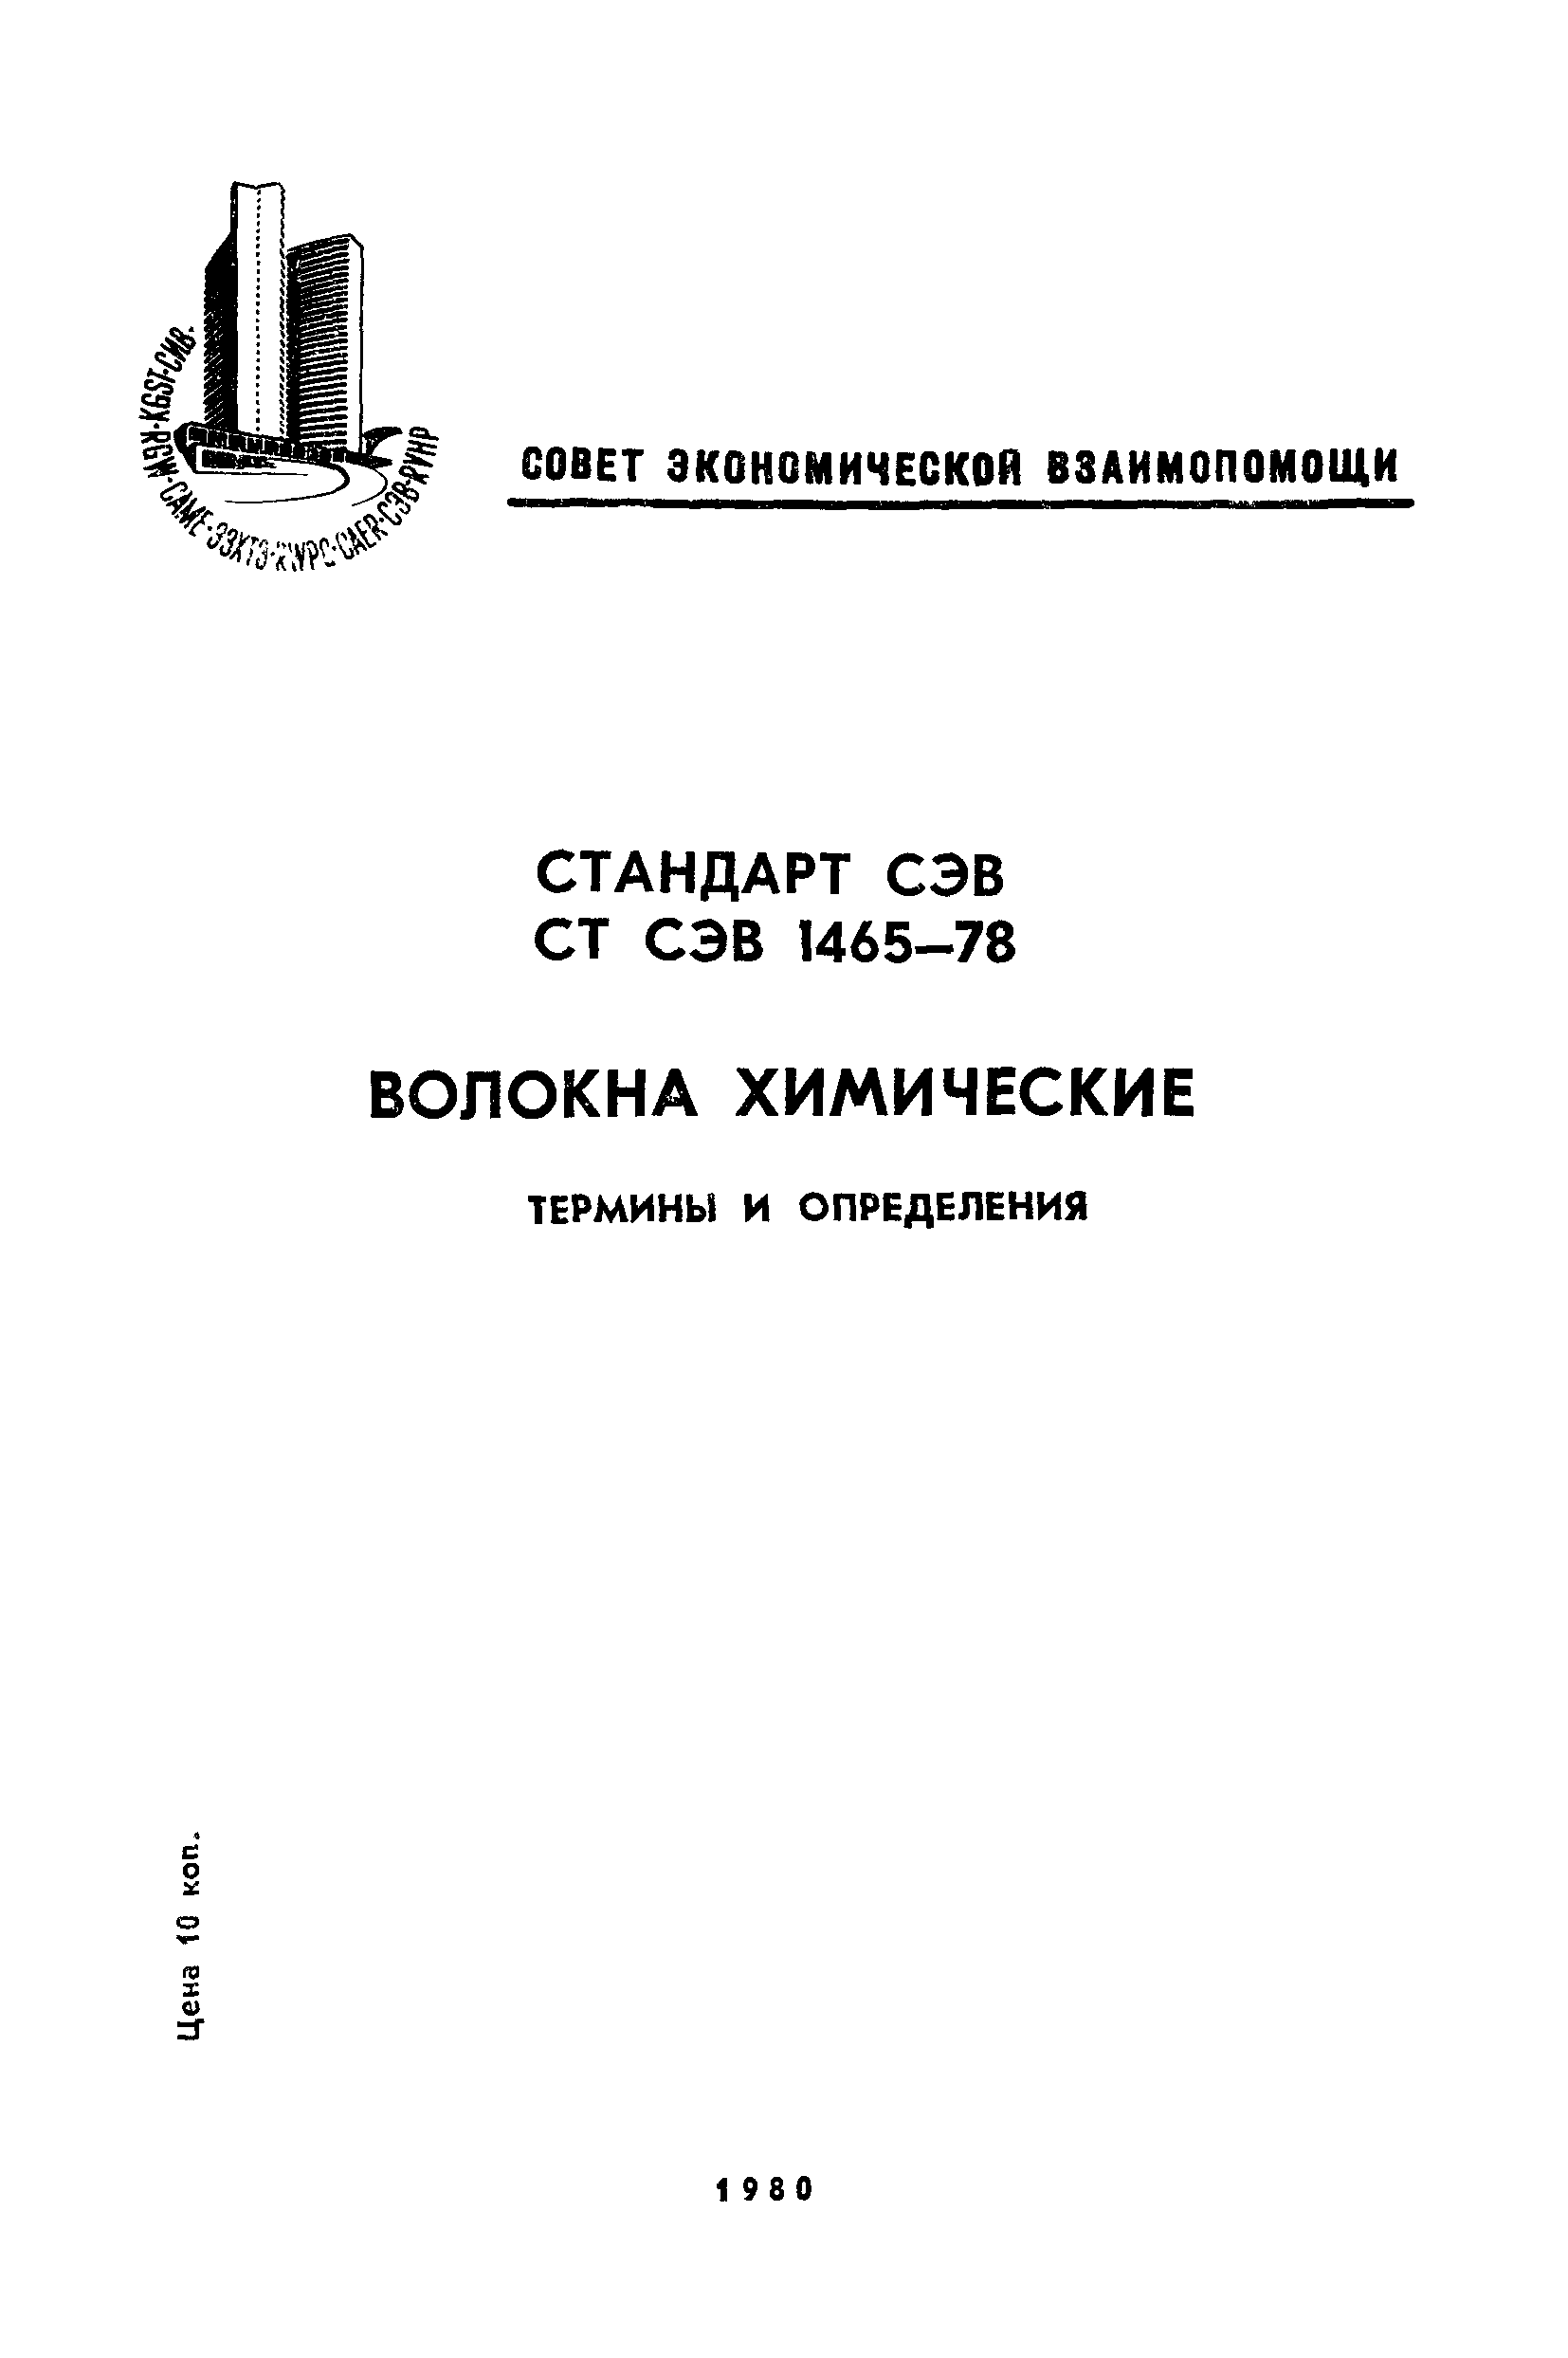 СТ СЭВ 1465-78